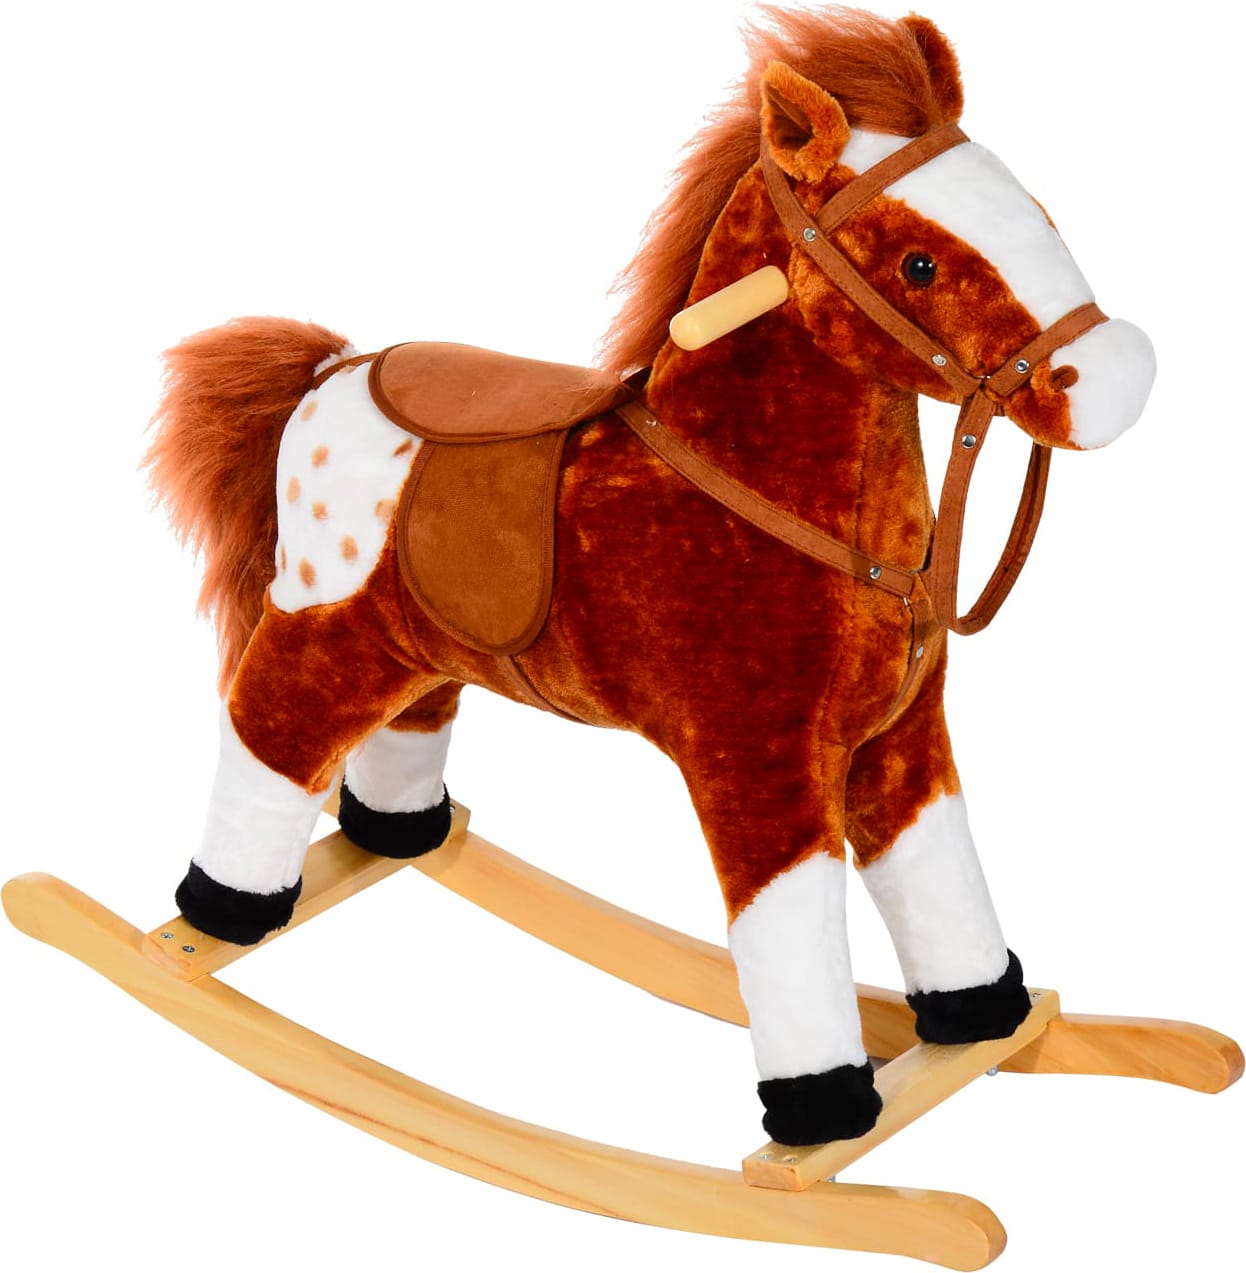 dechome 330004bn cavallo a dondolo in legno con suoni cavalcabile per bambini da 3+ anni colore marrone - 330004bn